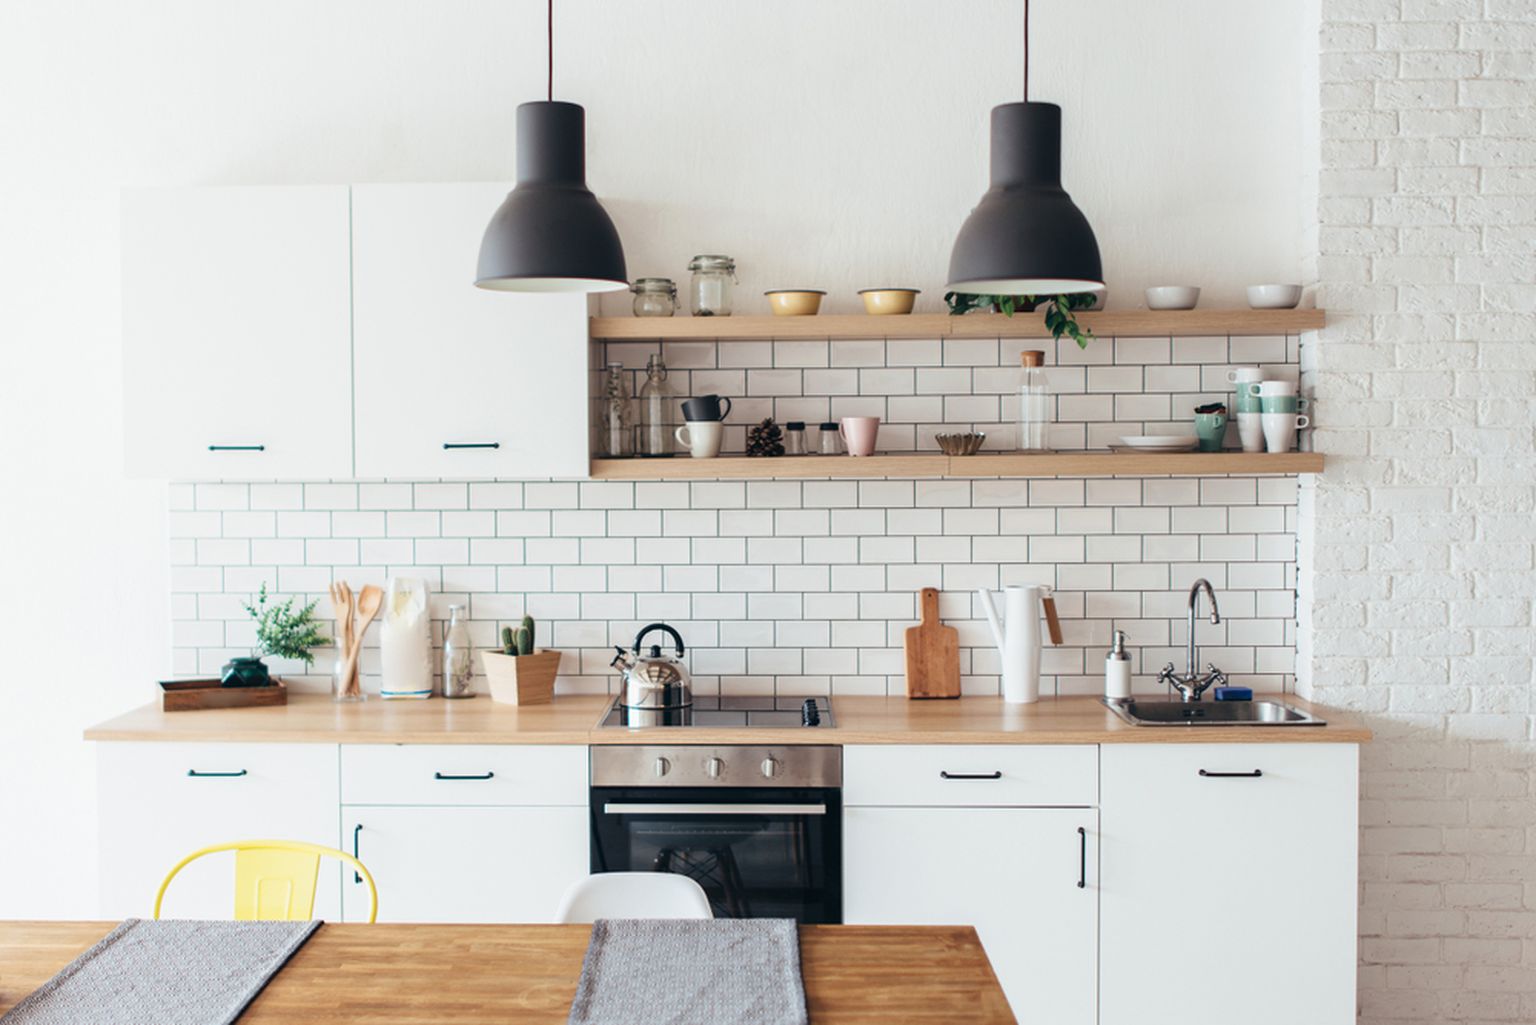 Valged köögid ei kao küll kuhugi, aga neid täiendatakse erinevate detailide, näiteks ehtsast puidust riiulite ja tööstuslike valgustitega.